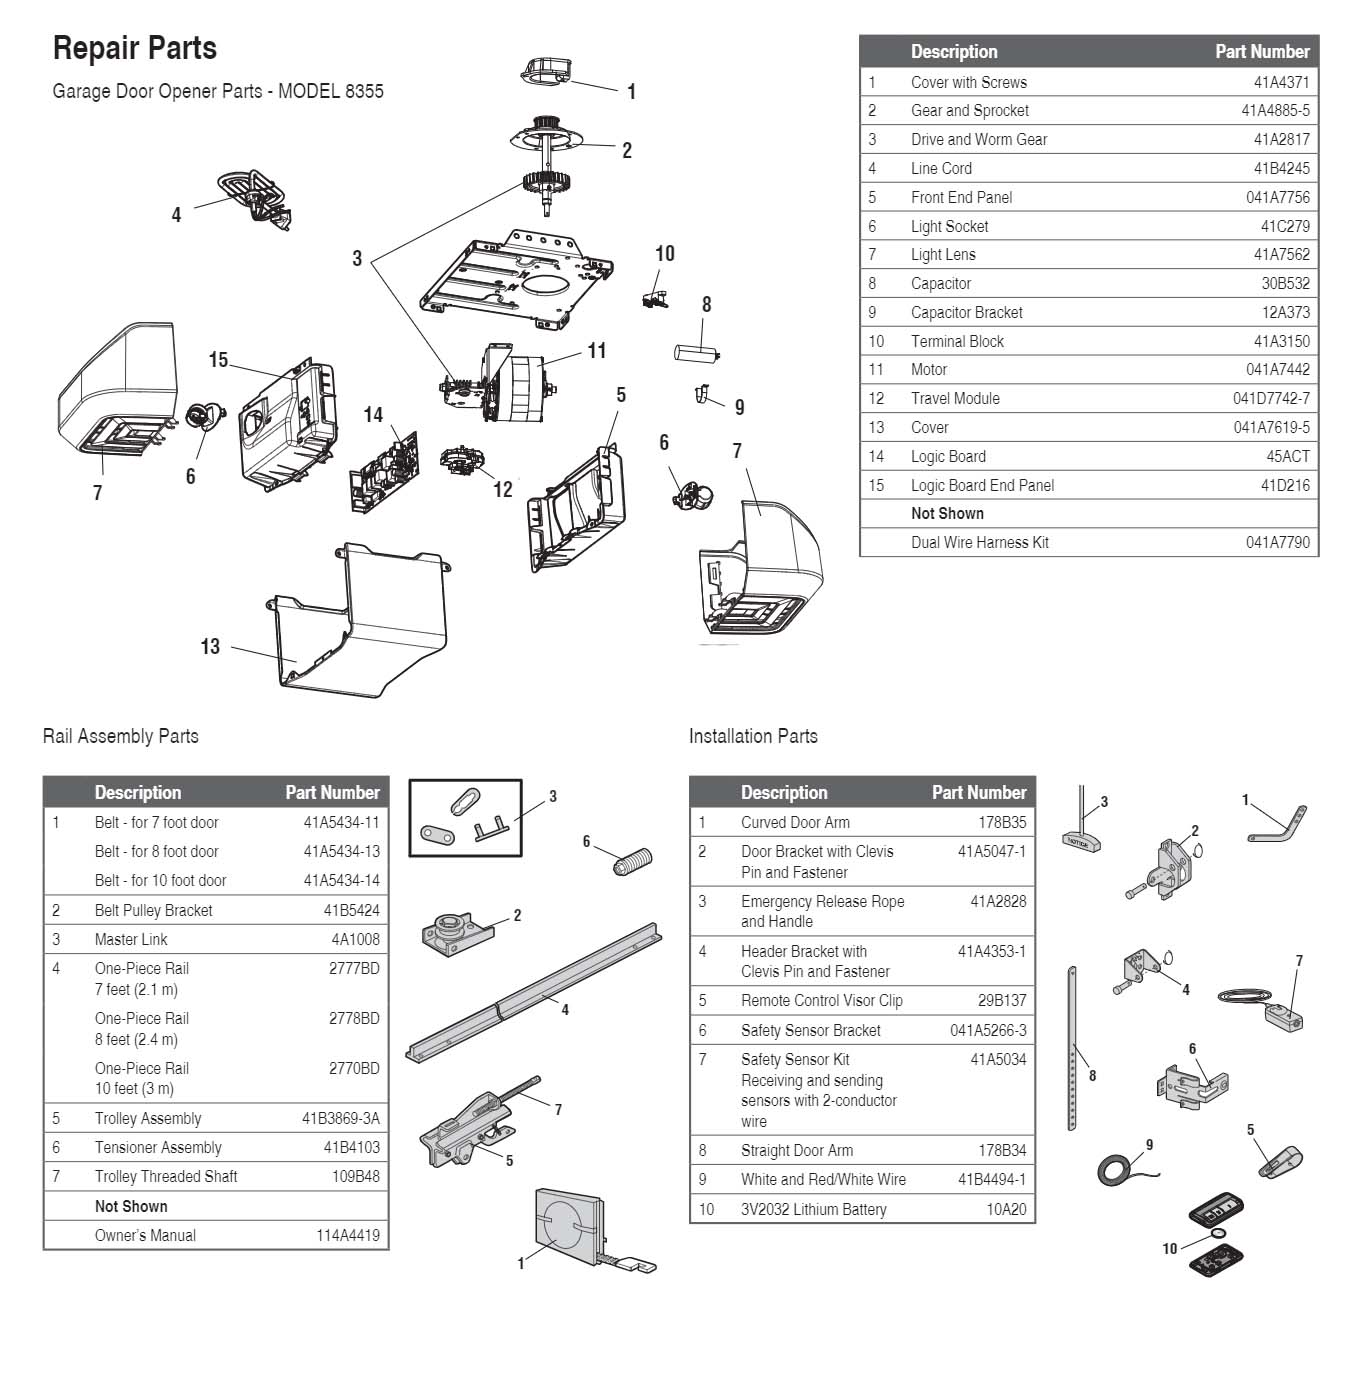 LiftMaster 8355 Garage Door Opener Parts Diagram and List